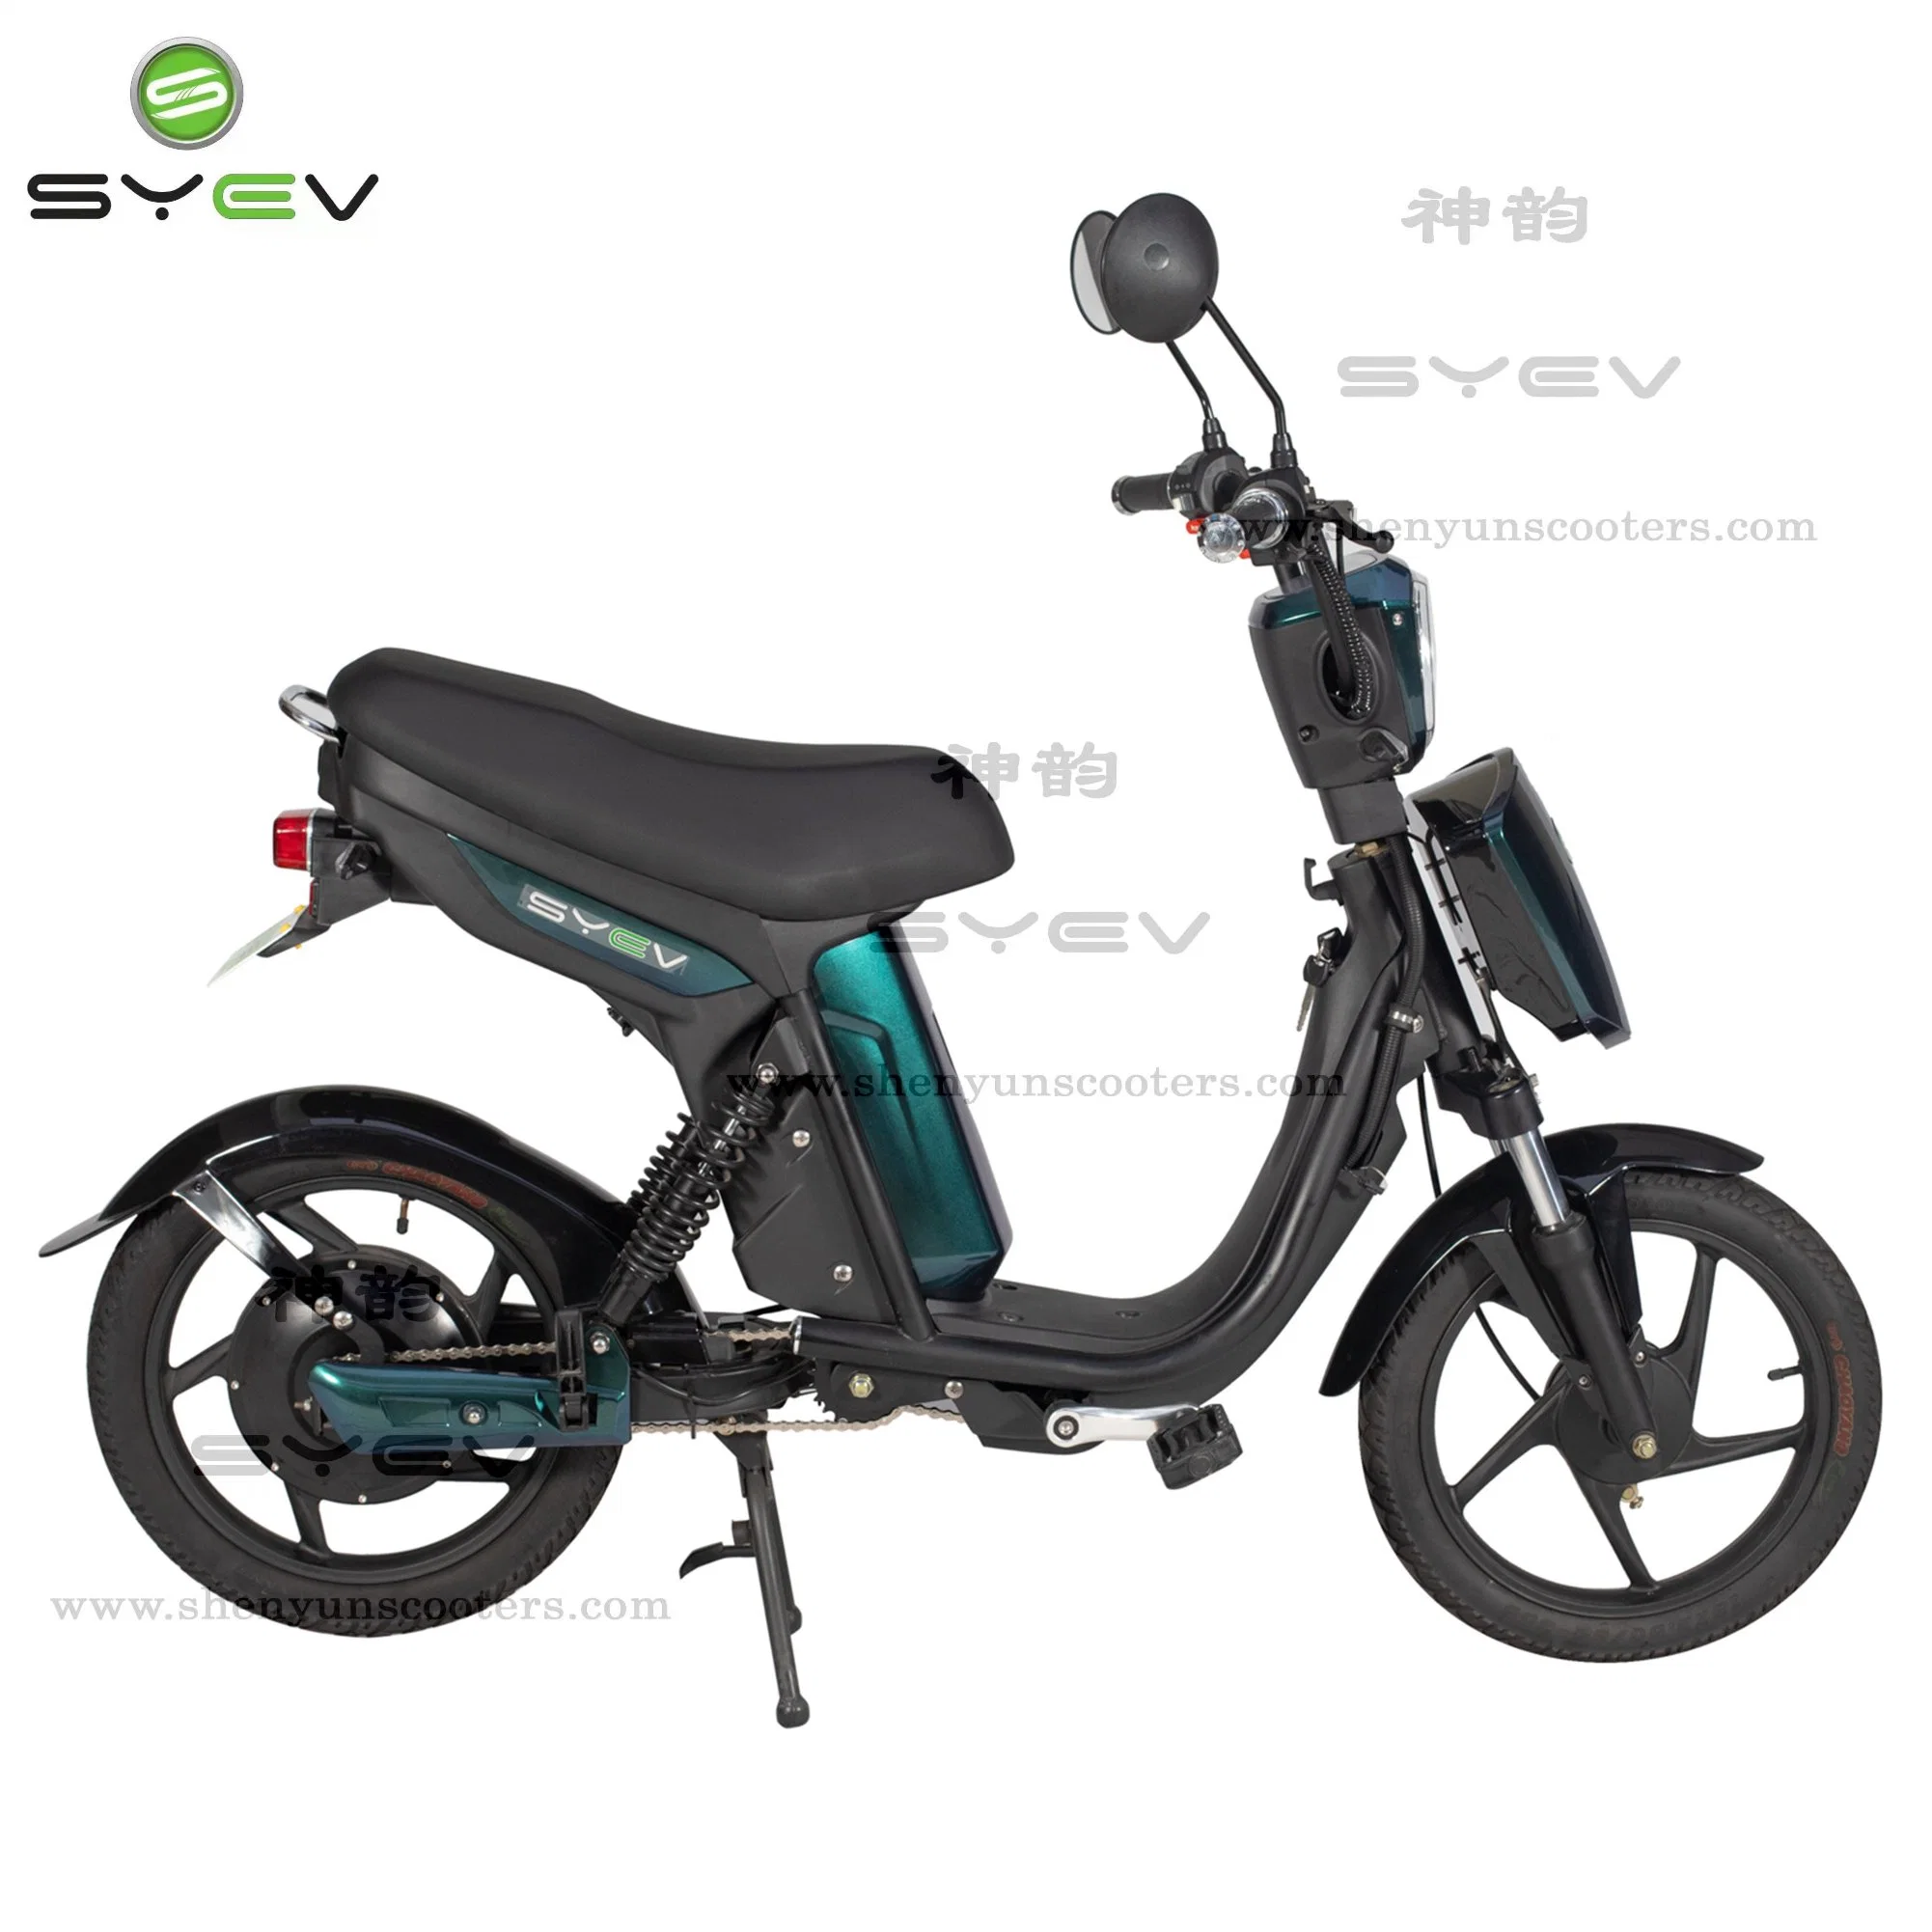 الصين الشركة المصنعة بالجملة بالغ رخيصة ميني كهربائي دراجة كهربائية CKD الكهربائية الدراجة للبيع